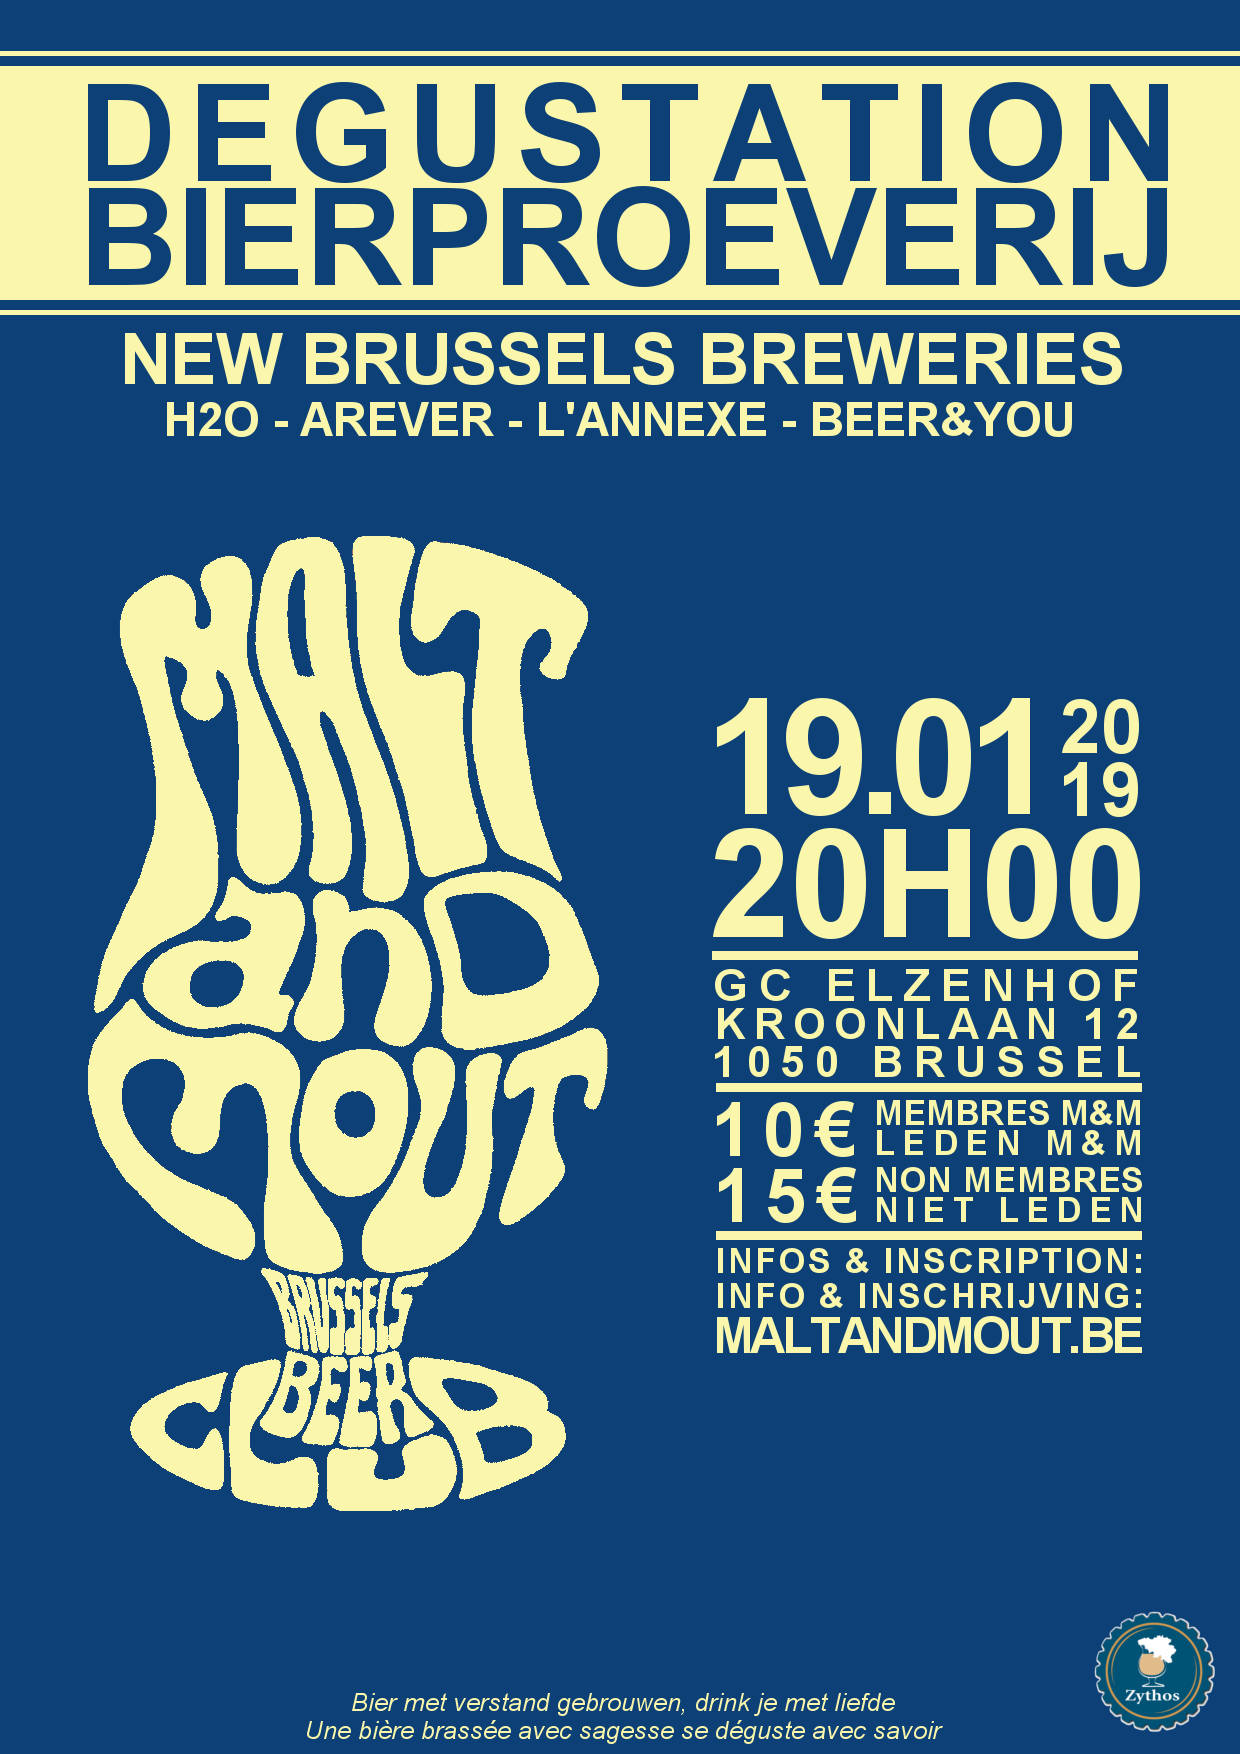 New Brussels Breweries Tasting